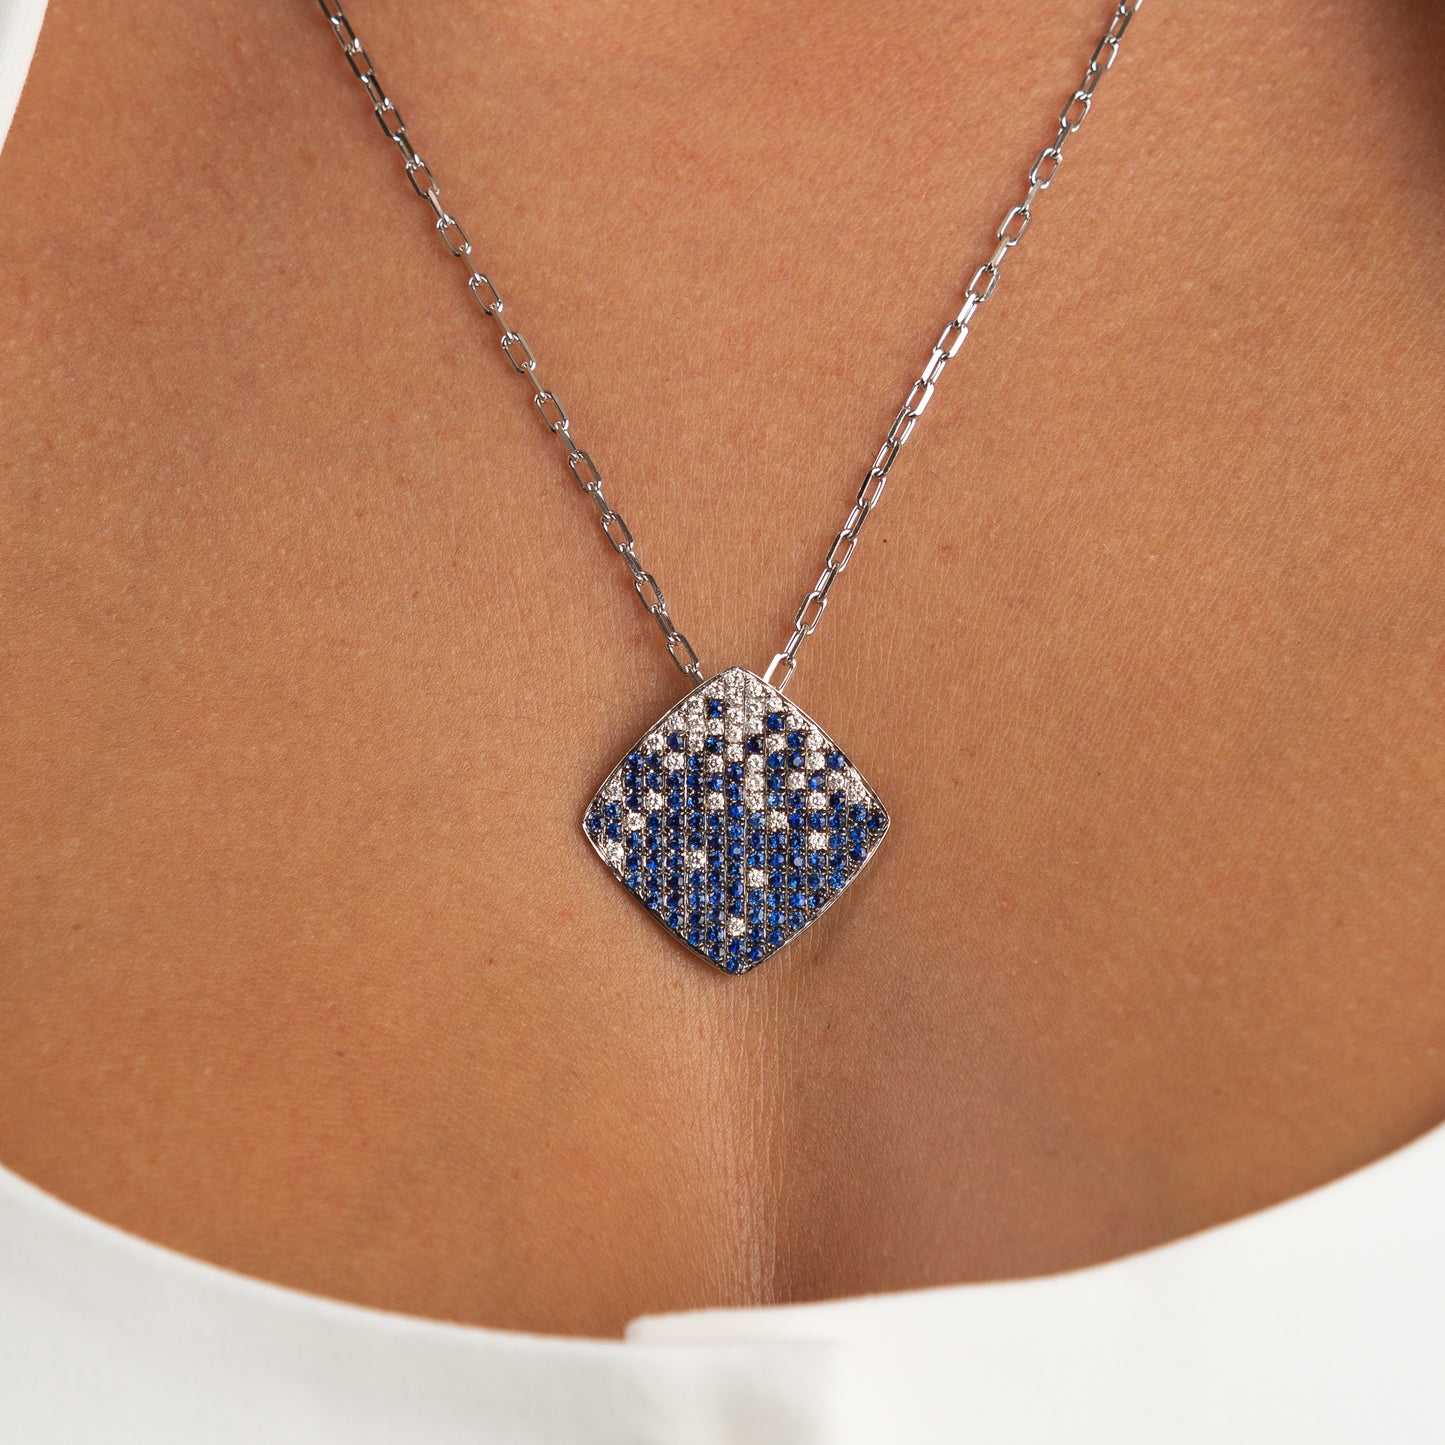 The Pavé Sapphire Pendant